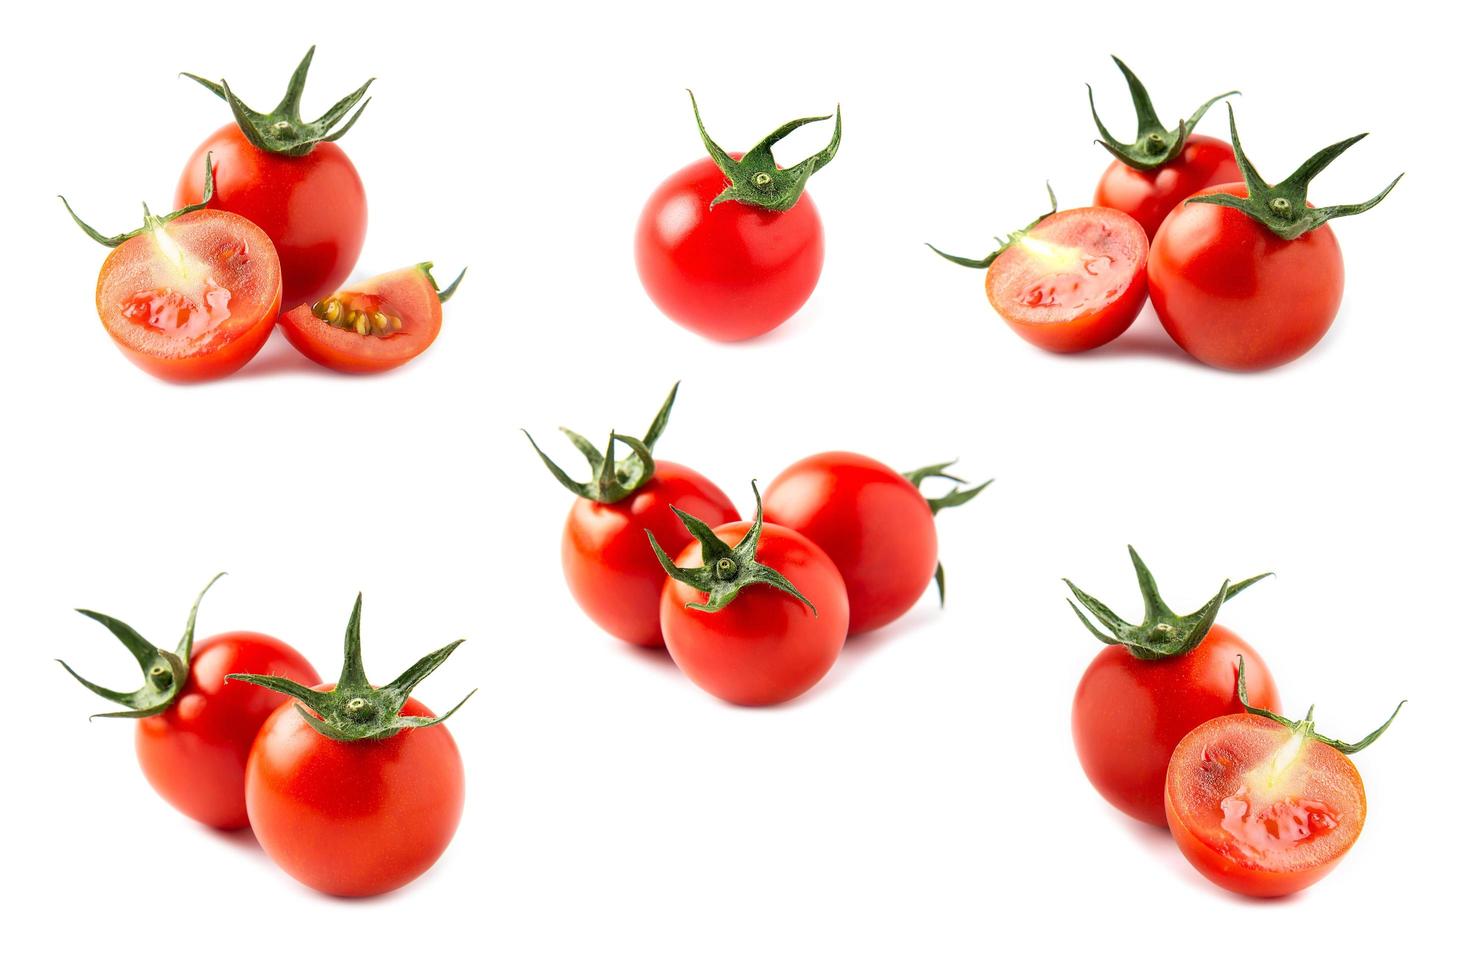 Tomate lokalisiert auf weißem Hintergrund - gesundes Gemüsekonzept der frischen Tomate foto